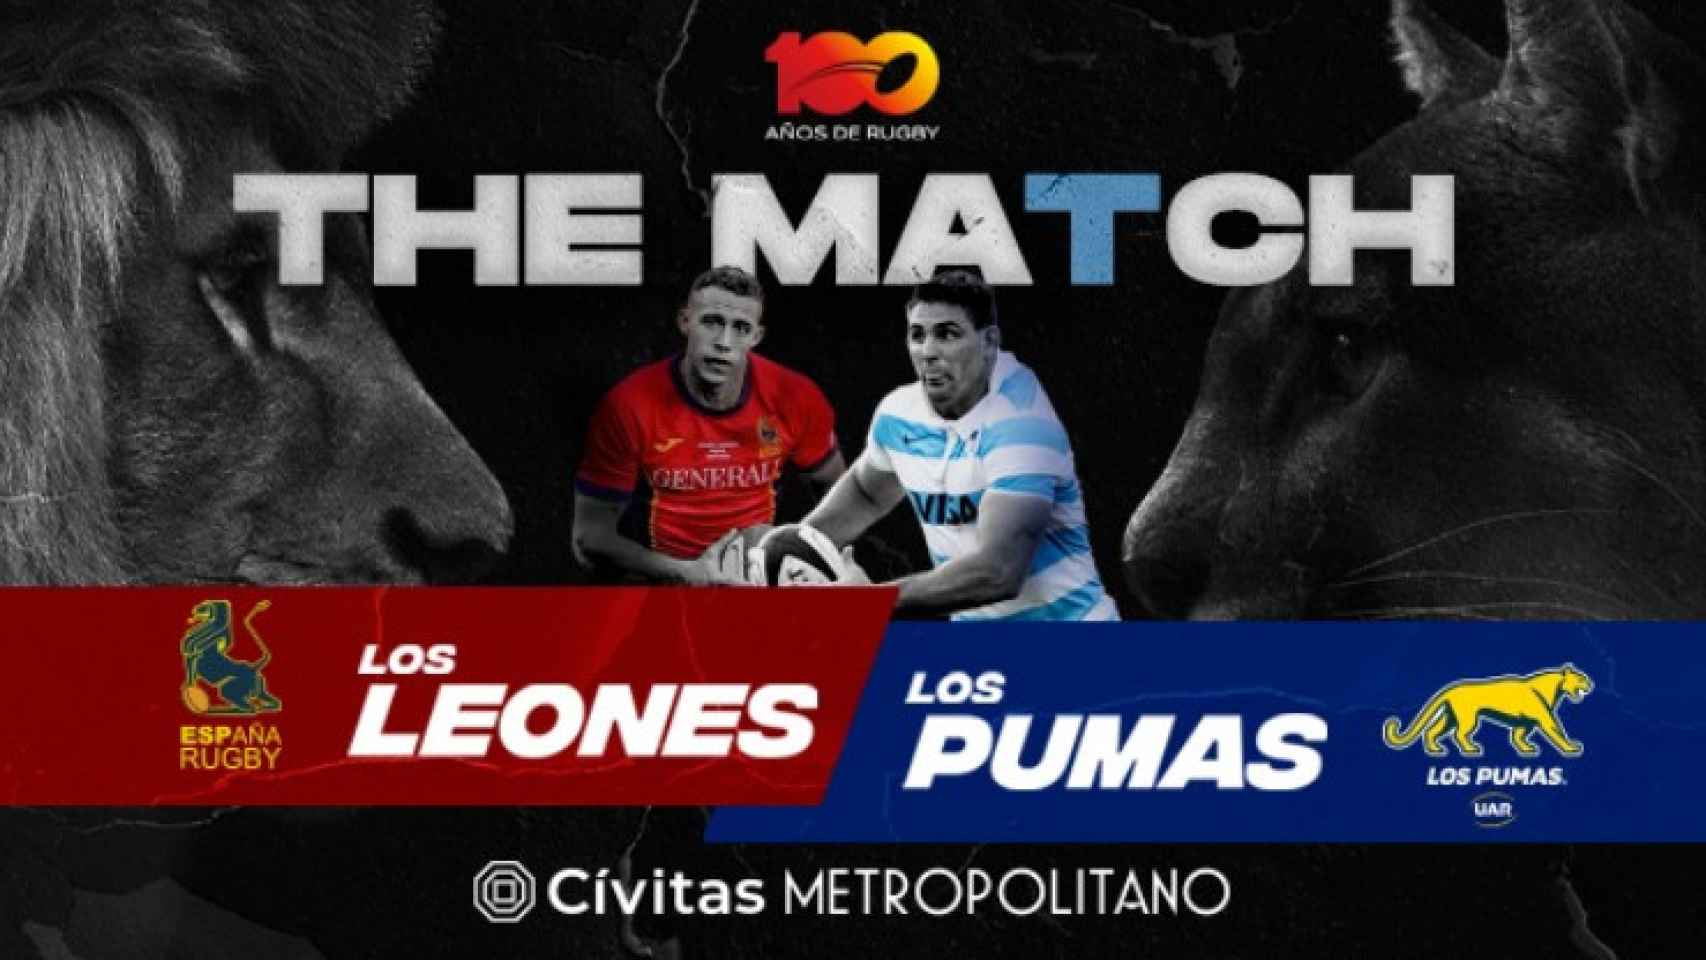 Cartel anunciante del partido de Los Leones y Los Pumas.